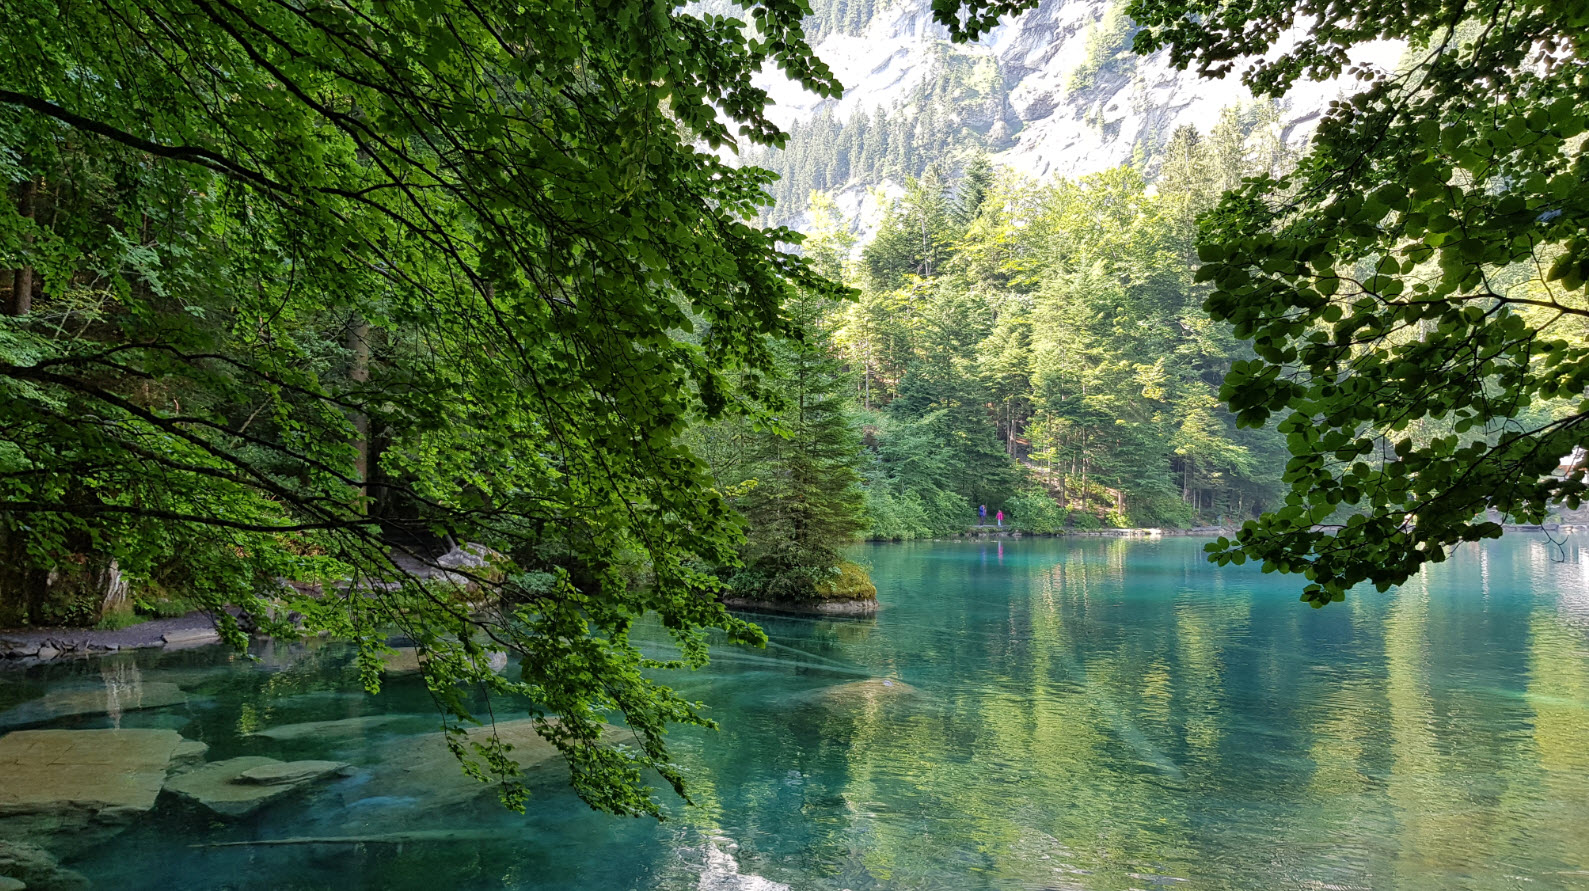 Blausee plus beaux lacs de Suisse